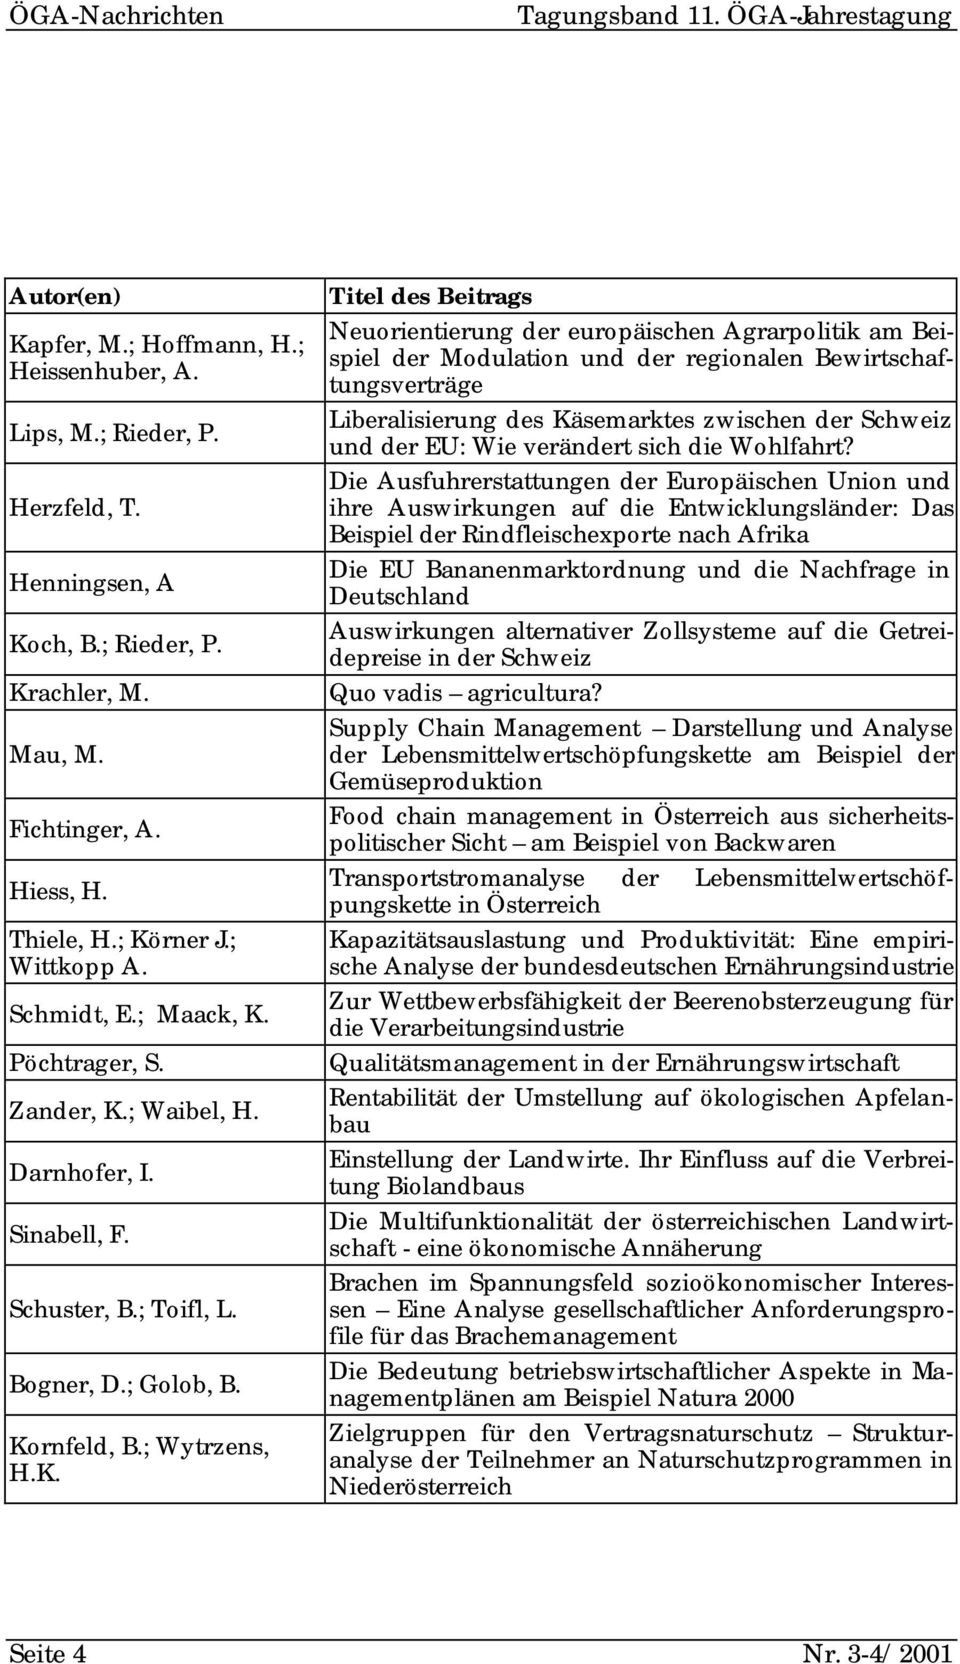 rner J.; Wittkopp A. Schmidt, E.; Maack, K.